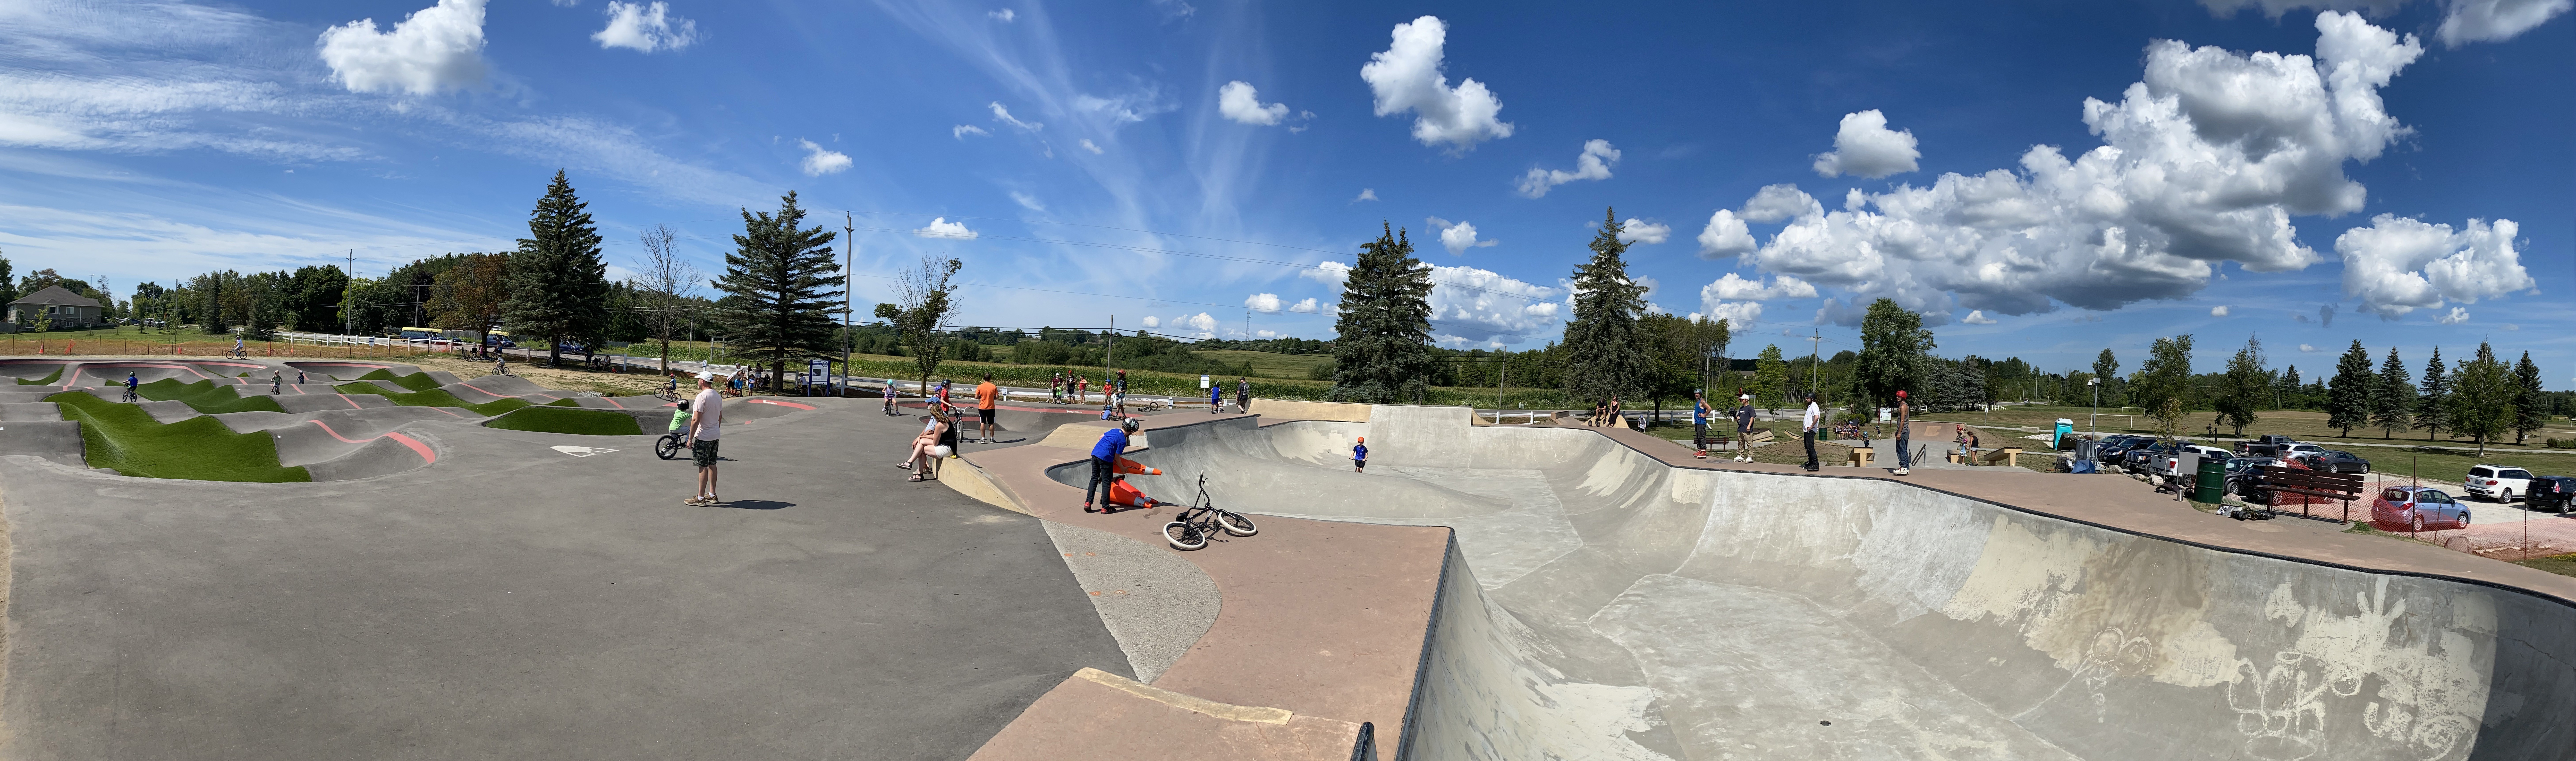 uxbridge skatepark